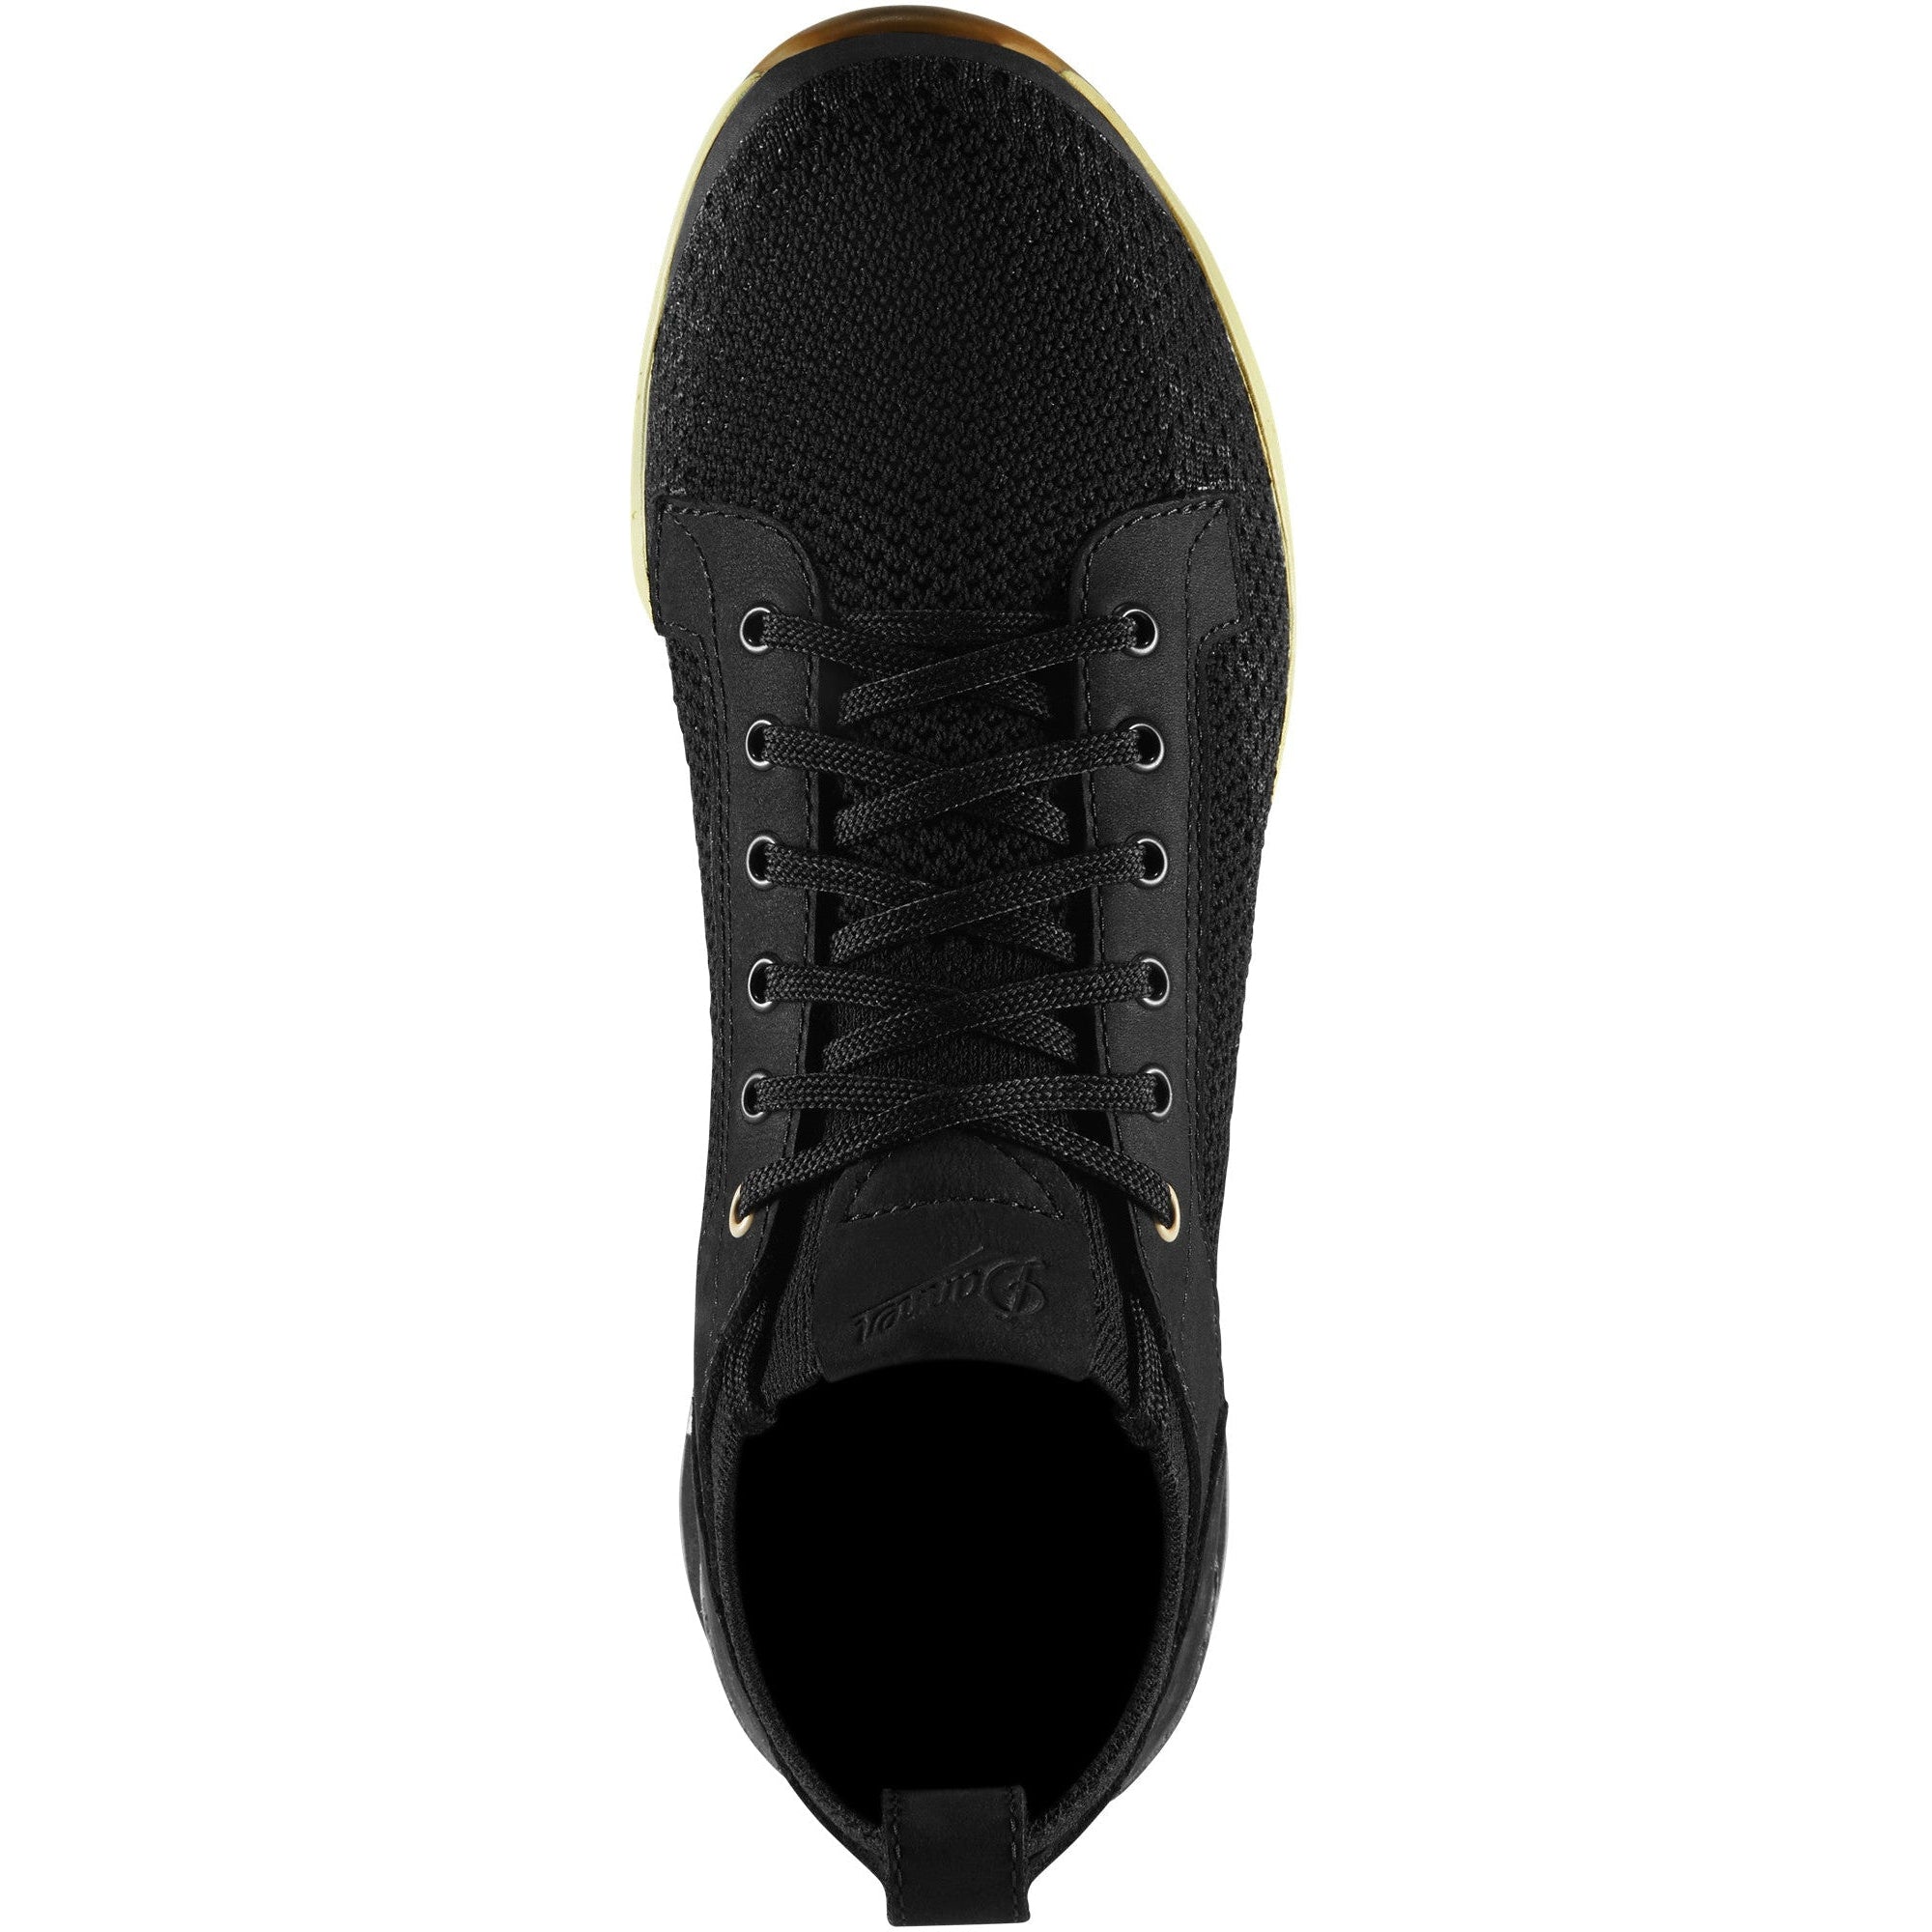 Danner Men's Overlook Knit Low Sneaker Lifestyle Shoe - Black - 31711  - Overlook Boots